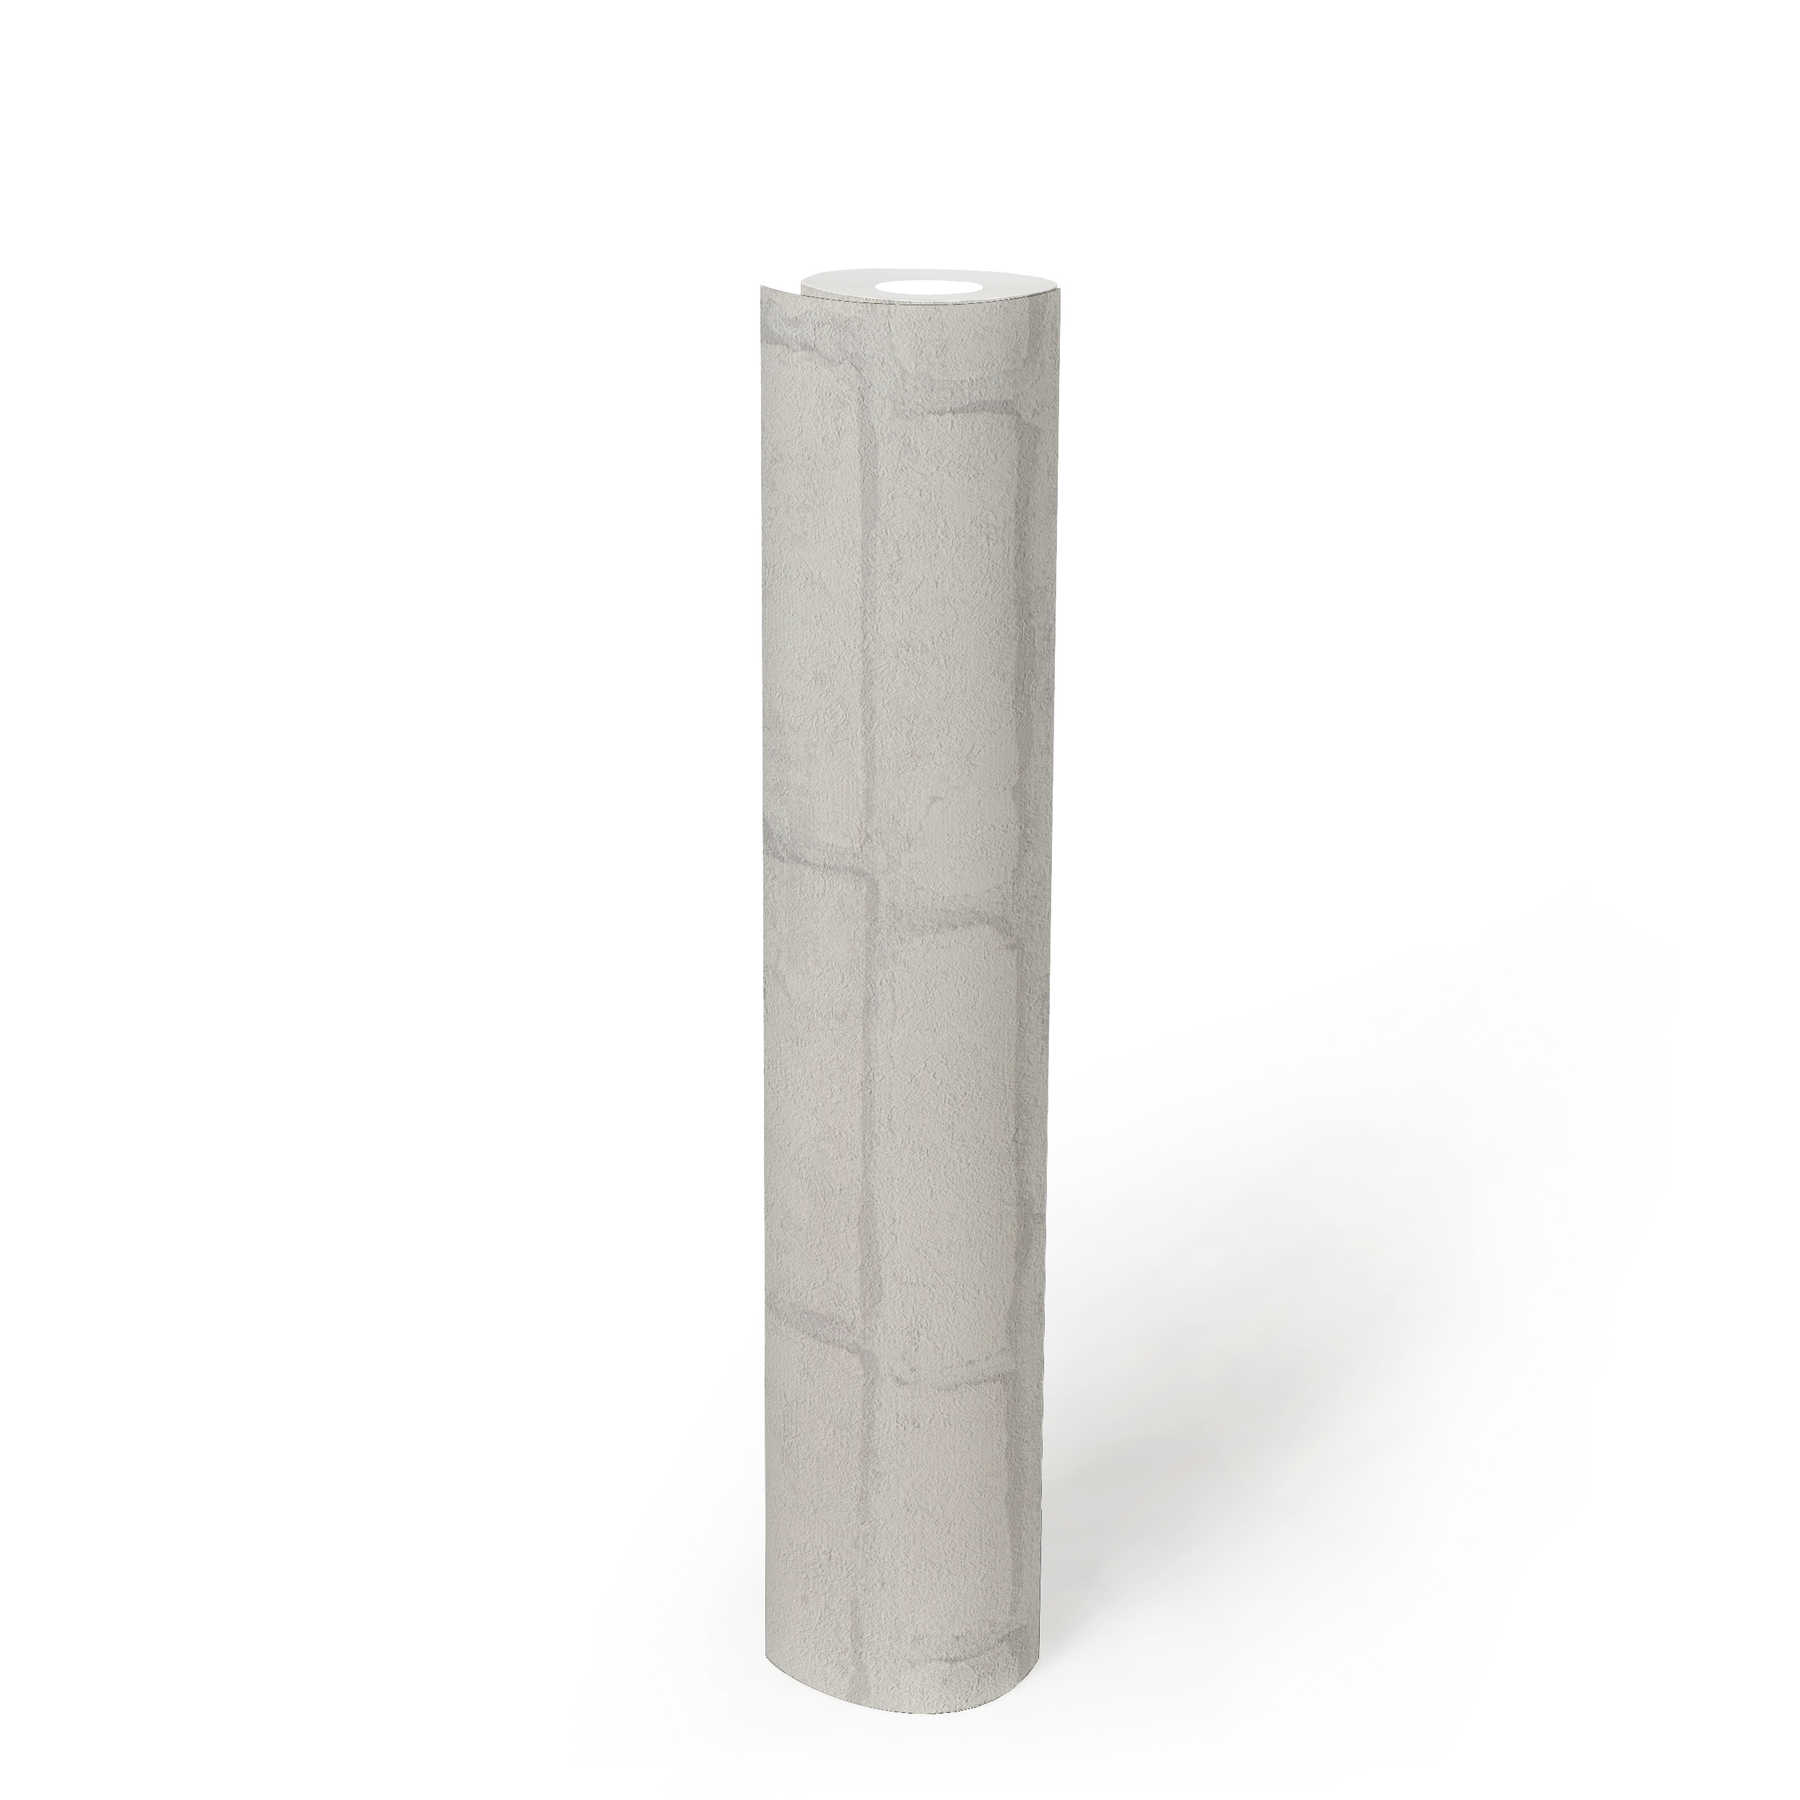             Carta da parati in pietra chiara con motivo a mattoni nel design industriale - bianco, grigio
        